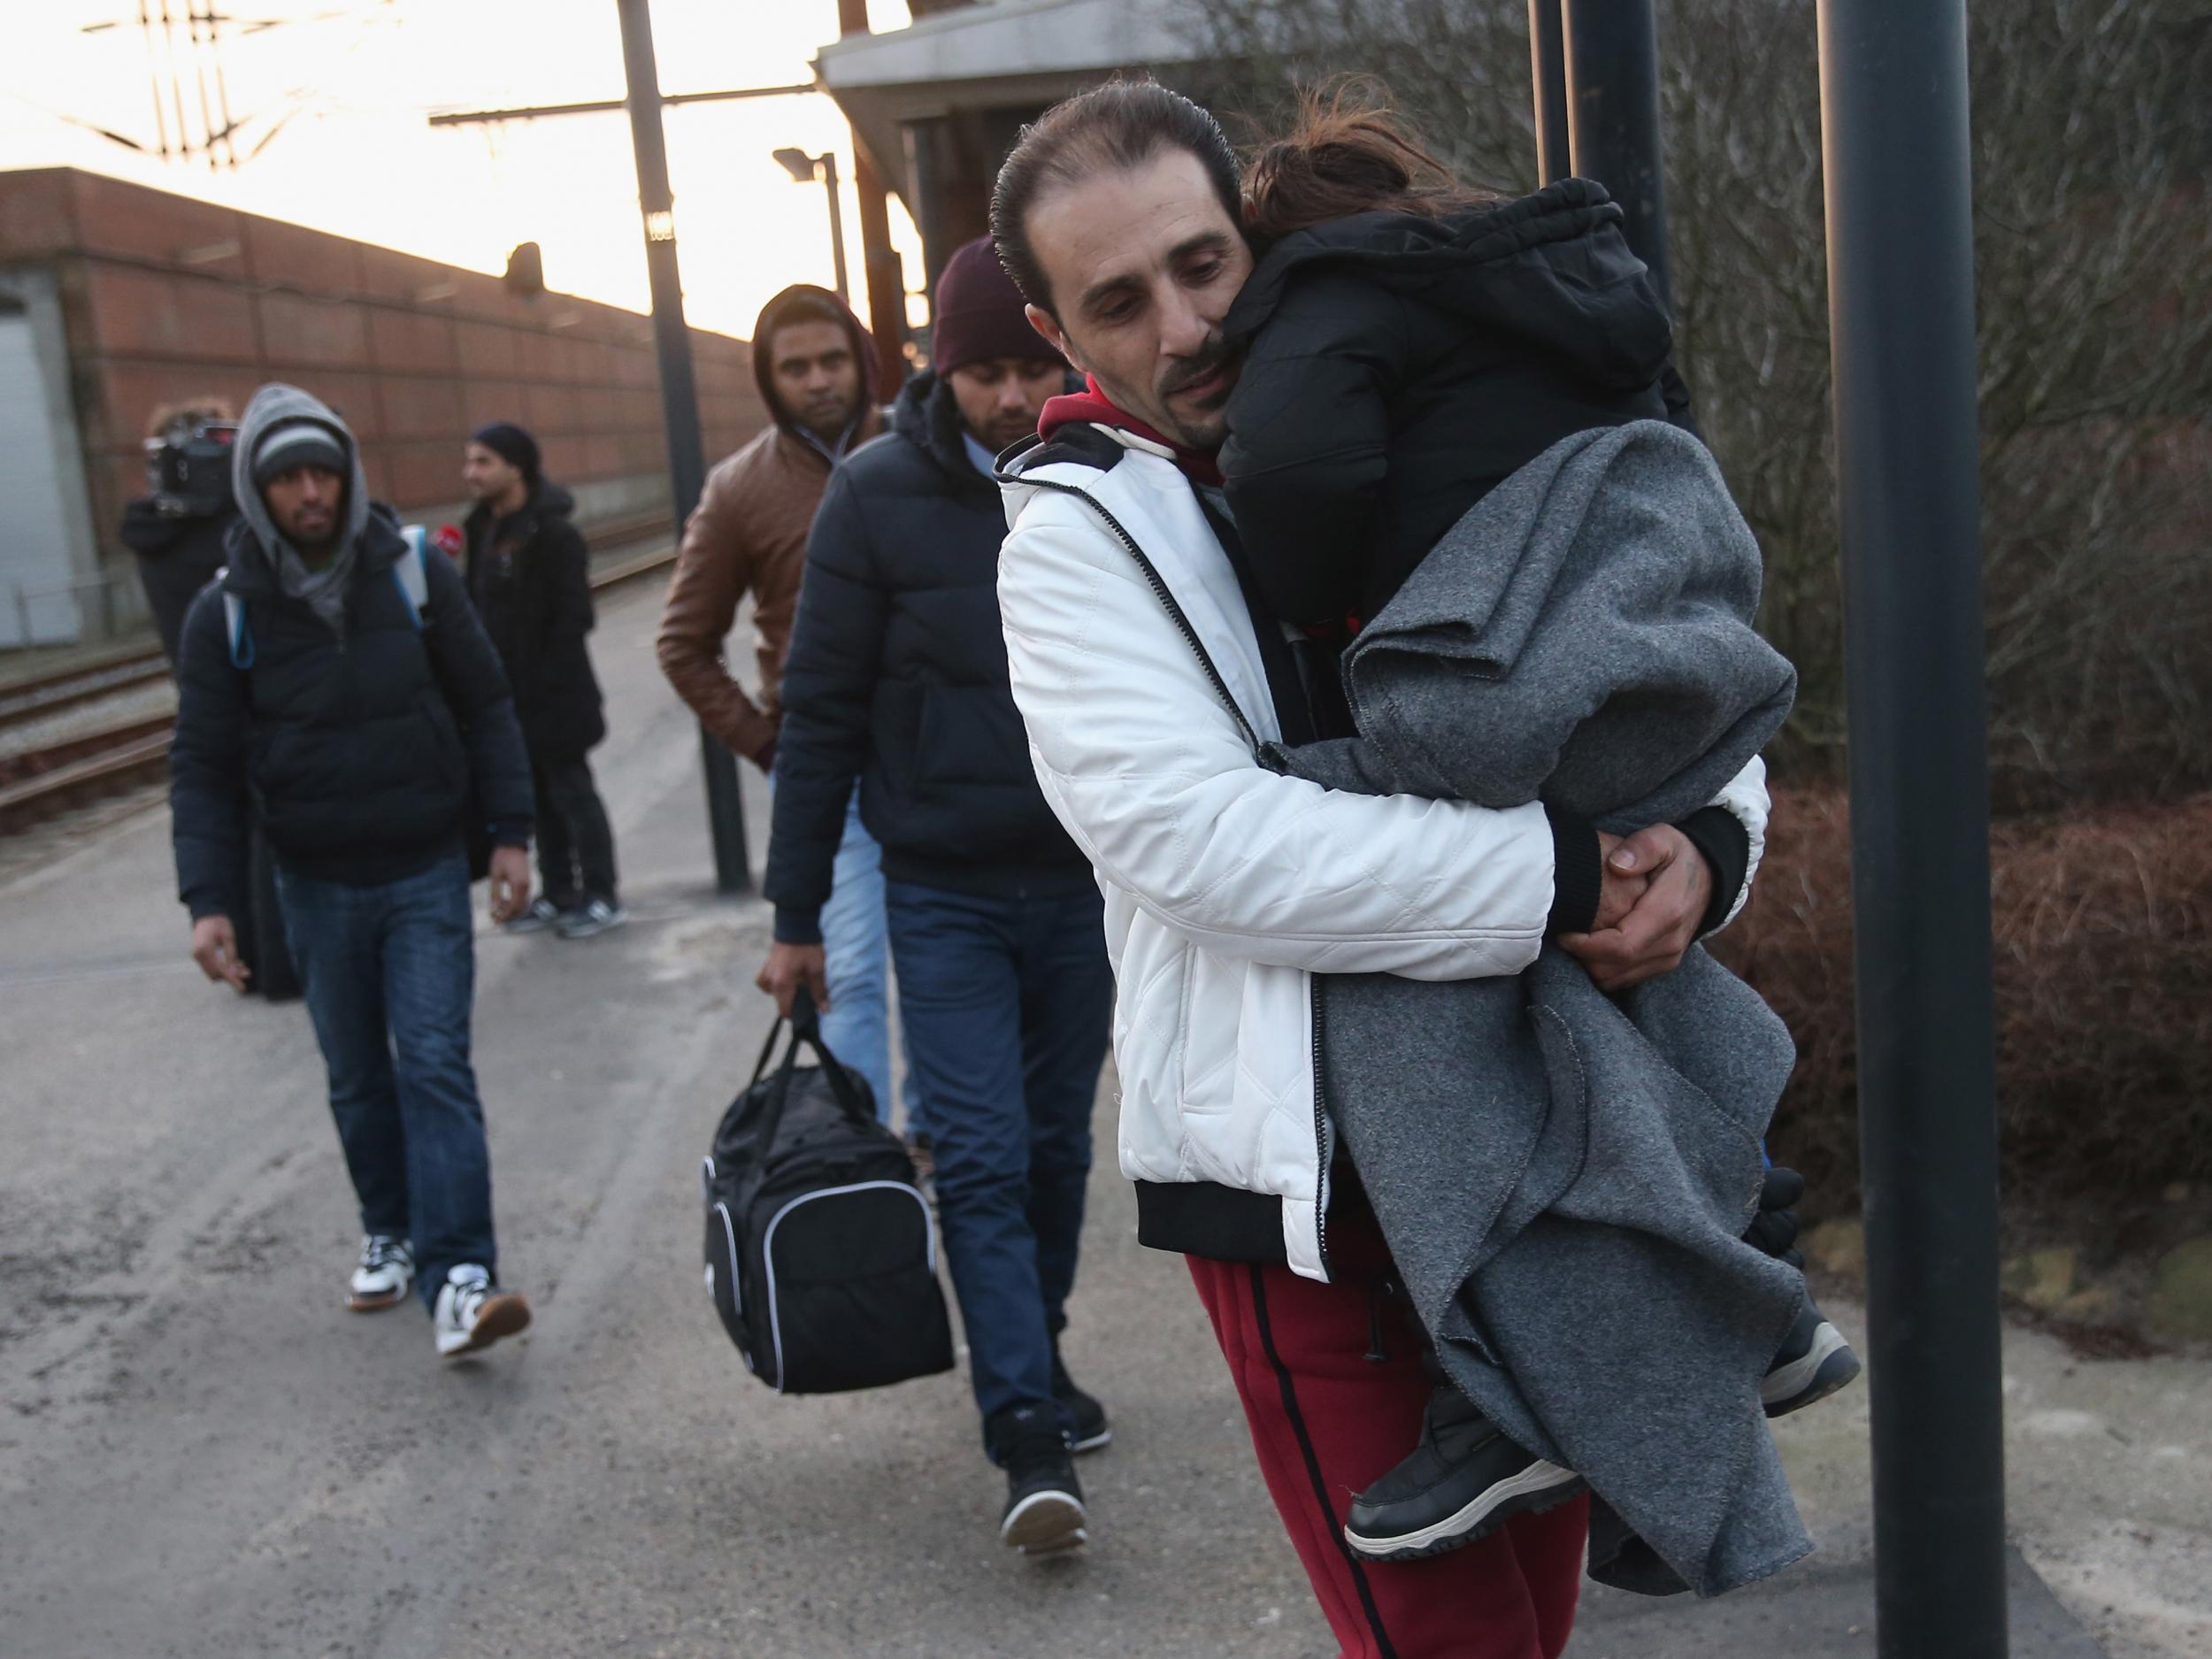 21,000 refugees claimed asylum in Denmark in 2015